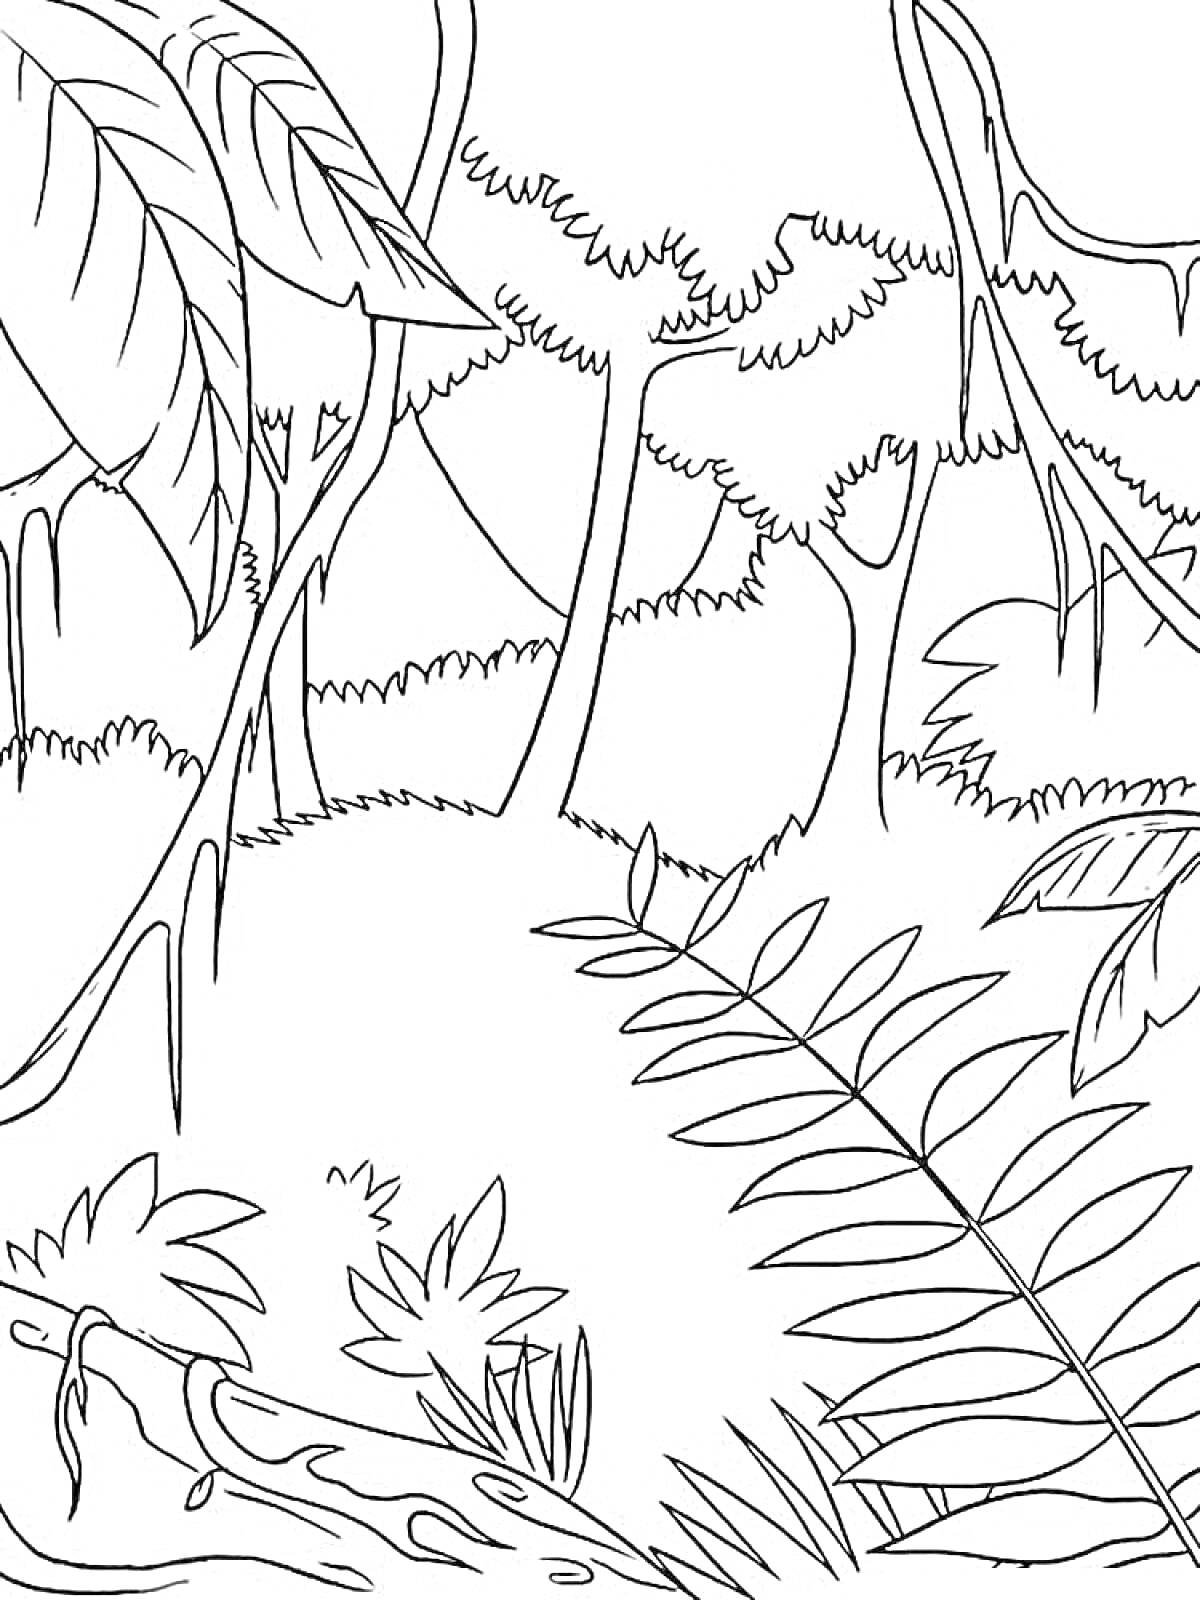 Раскраска Джунгли - деревья, лианы, большие листья, кусты